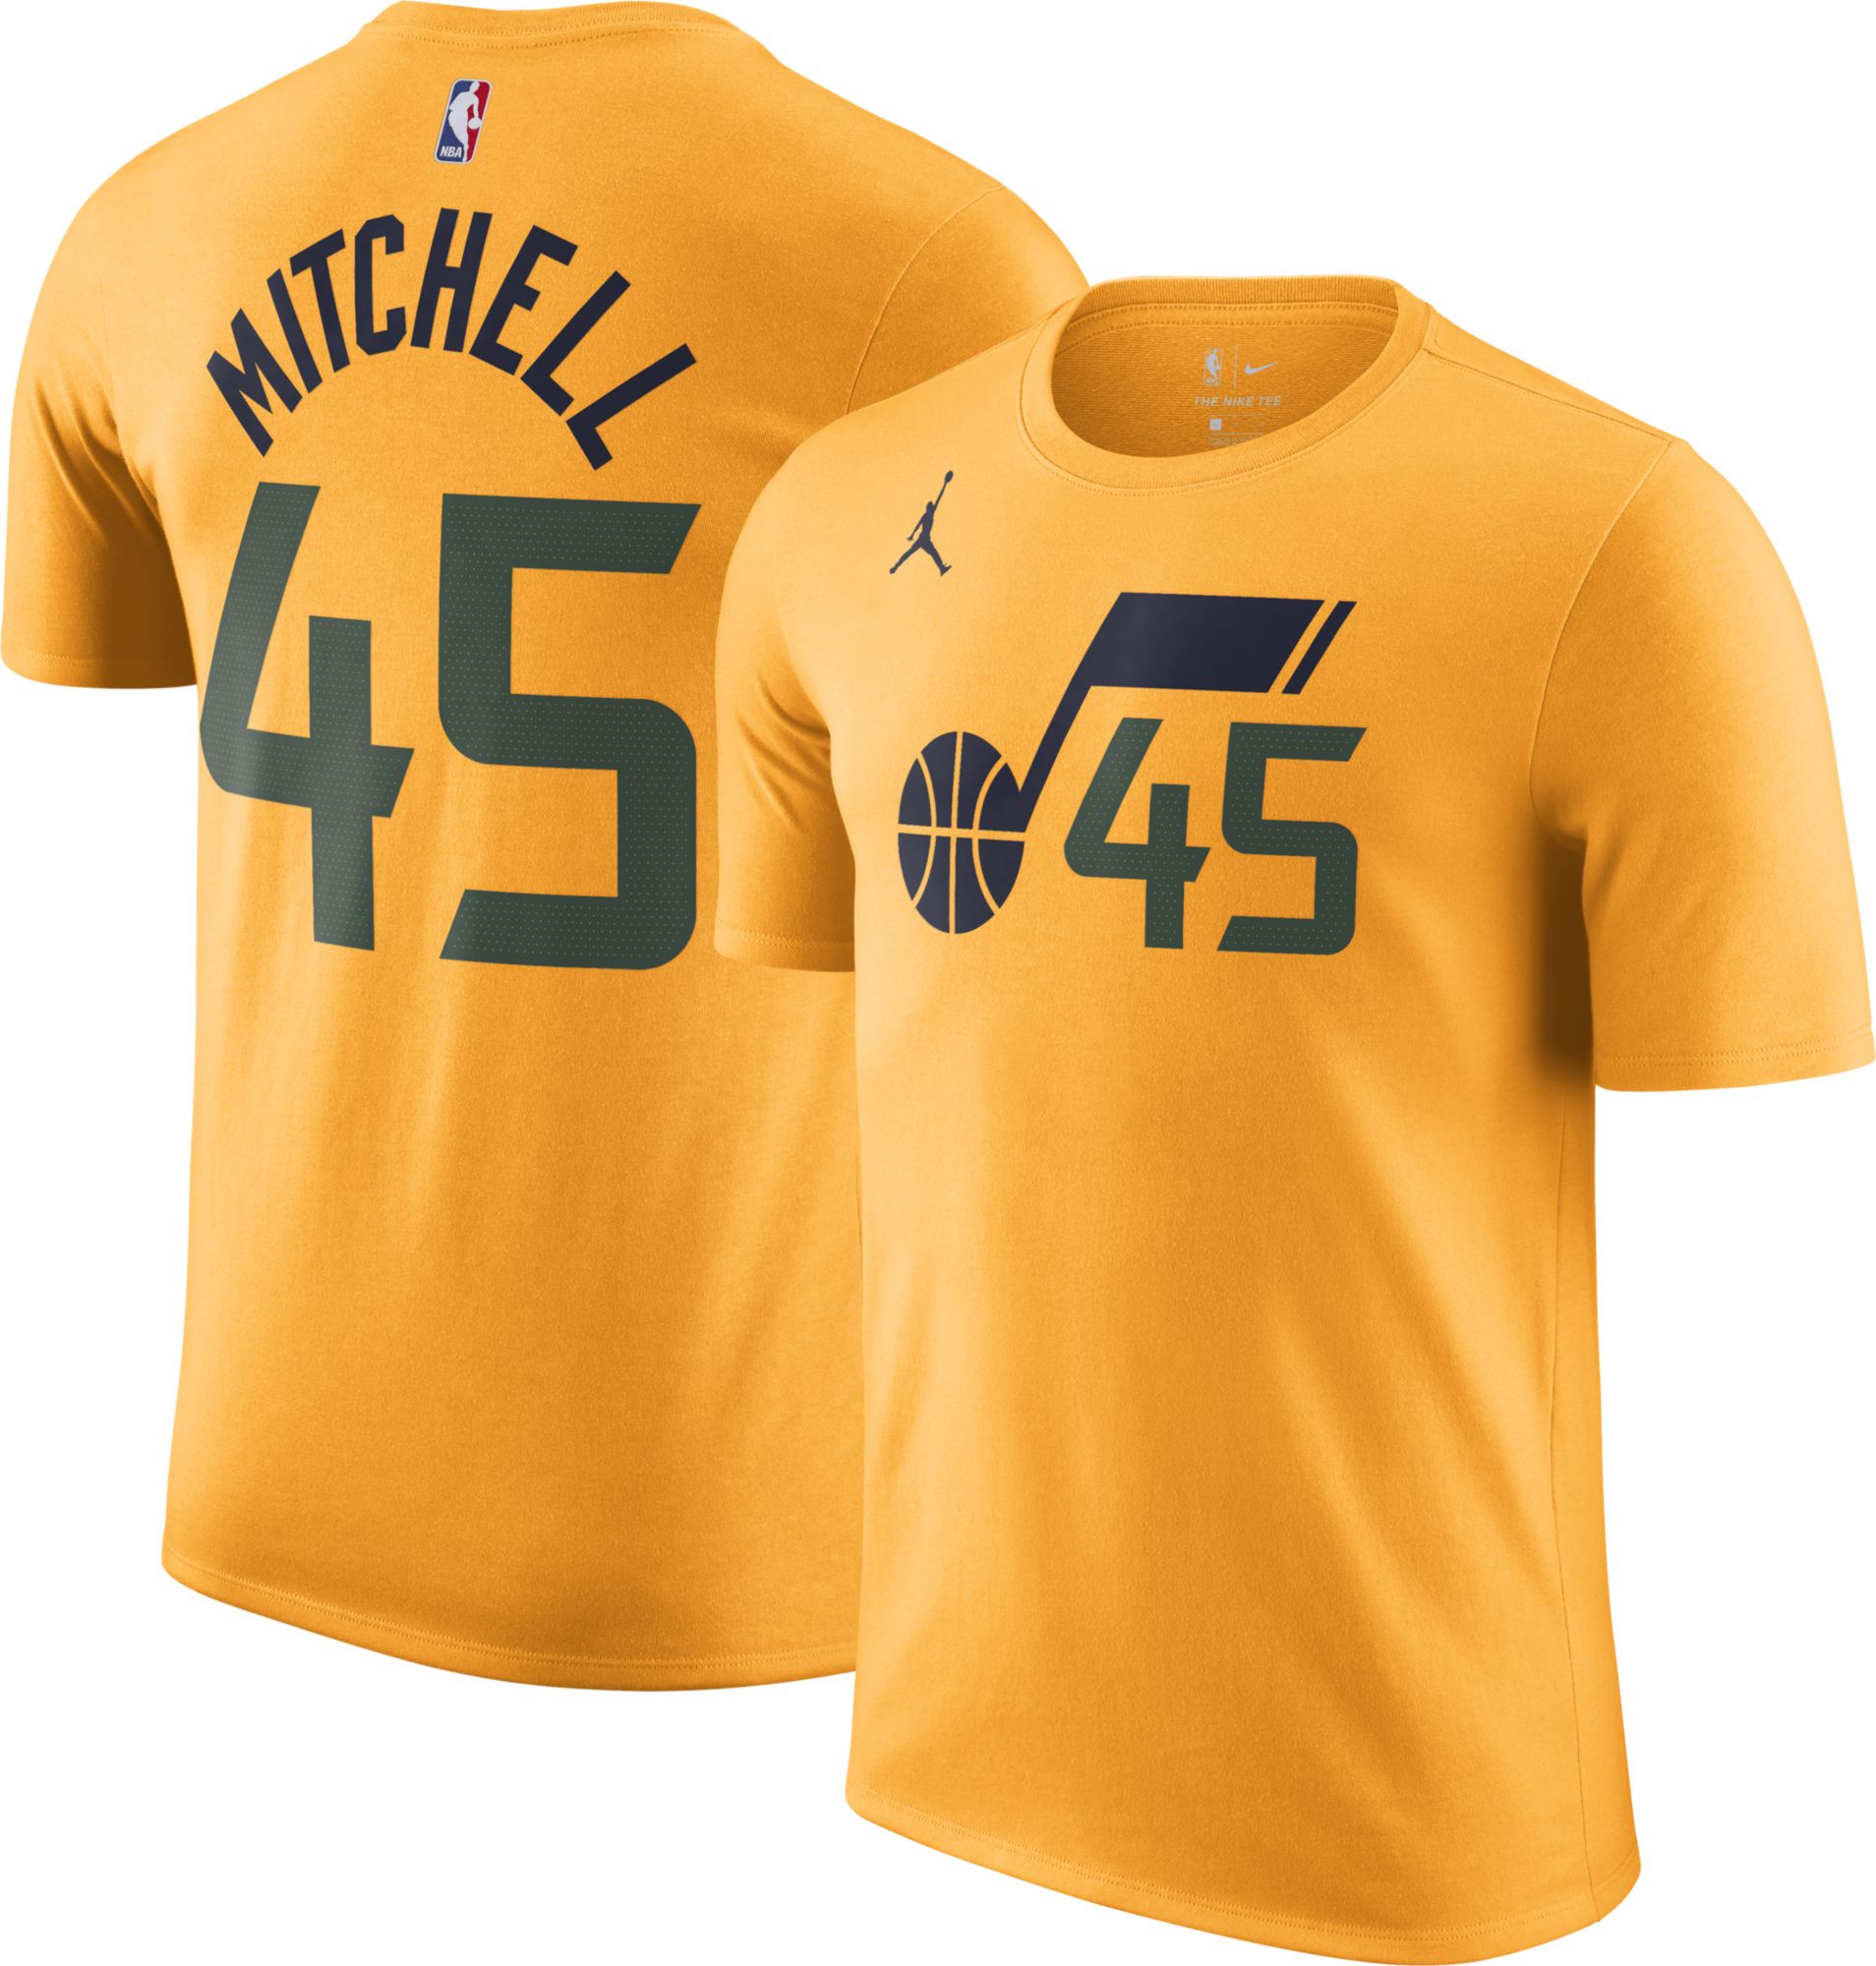 donovan mitchell statement jersey